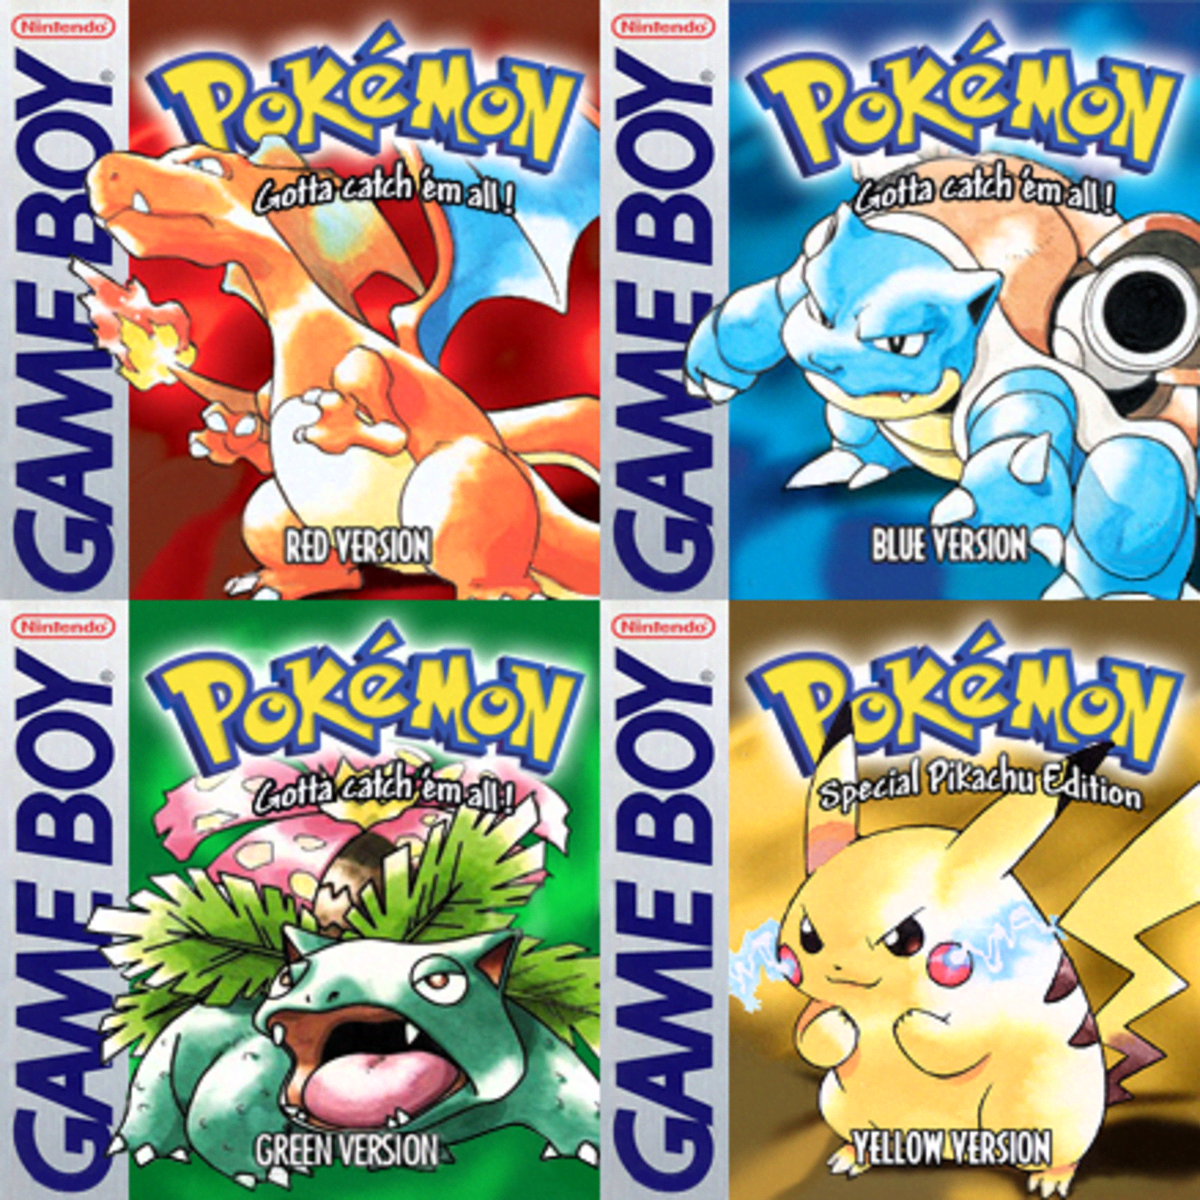 Pokémon Go - Gen 1 Pokémon list: Every Pokémon from Red, Blue, Green and  Yellow's Kanto region